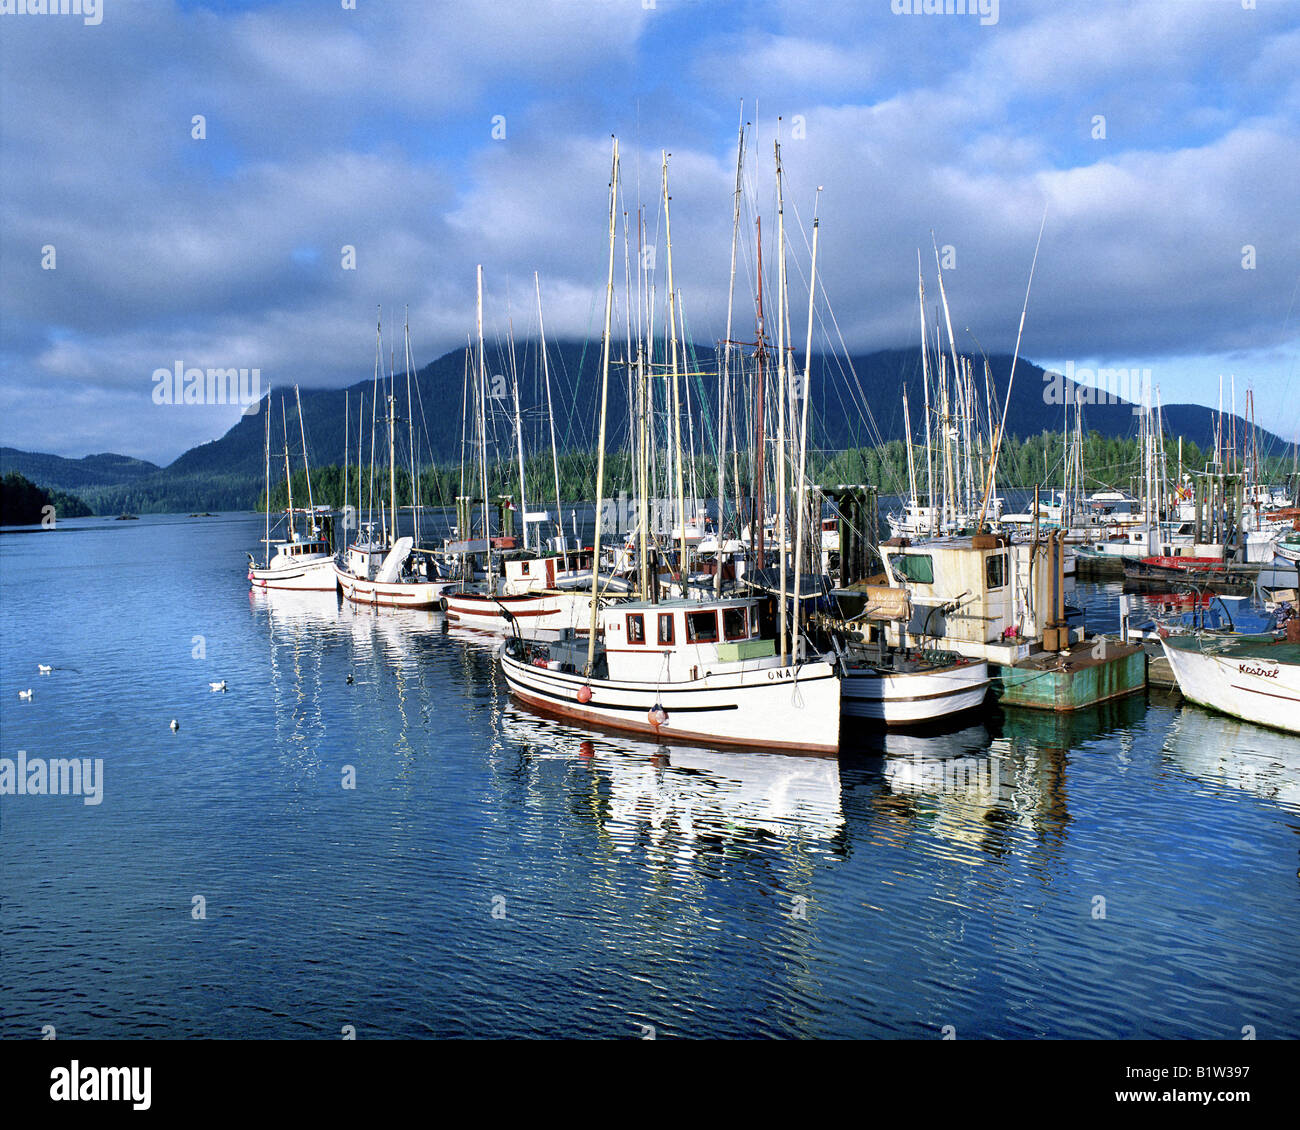 CA - Colombie-britannique : Tofino Harbour sur l'île de Vancouver Banque D'Images